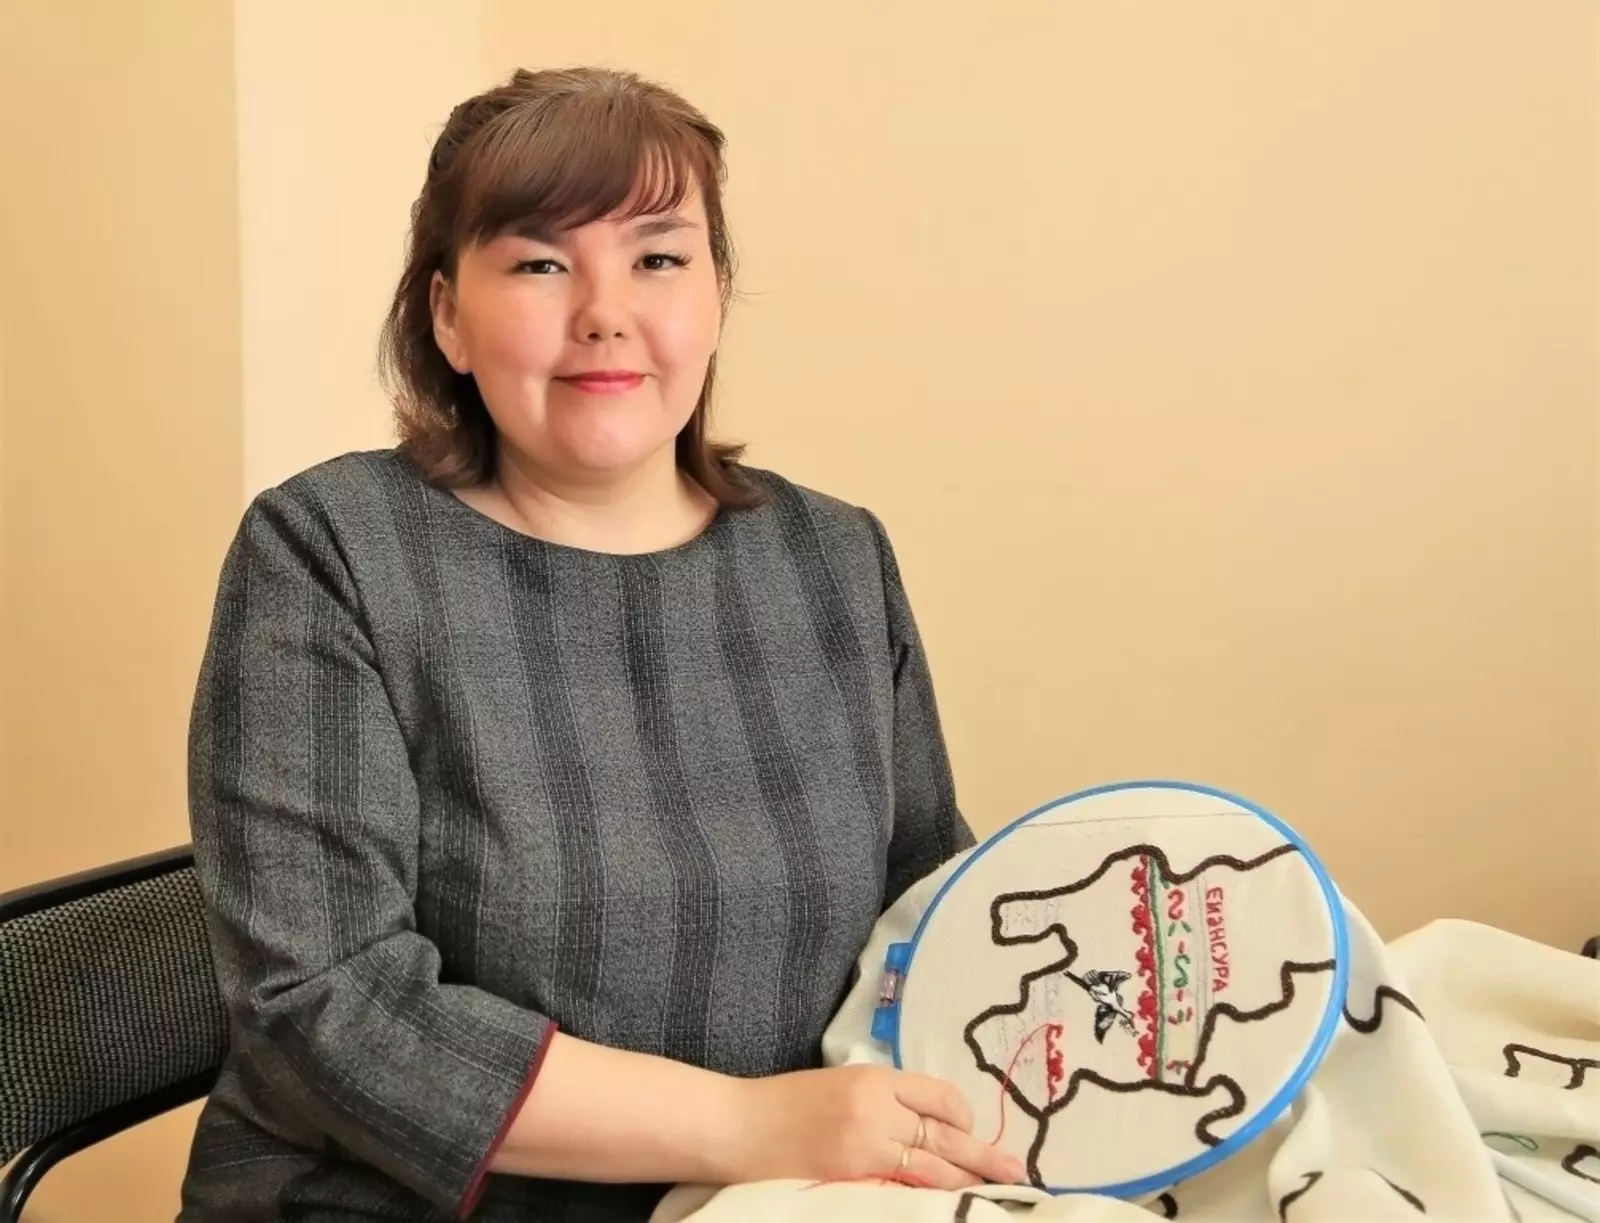 В работе над вышитой картой Зианчуринского района Башкортостана использован фрагмент башкирской пуховой шали